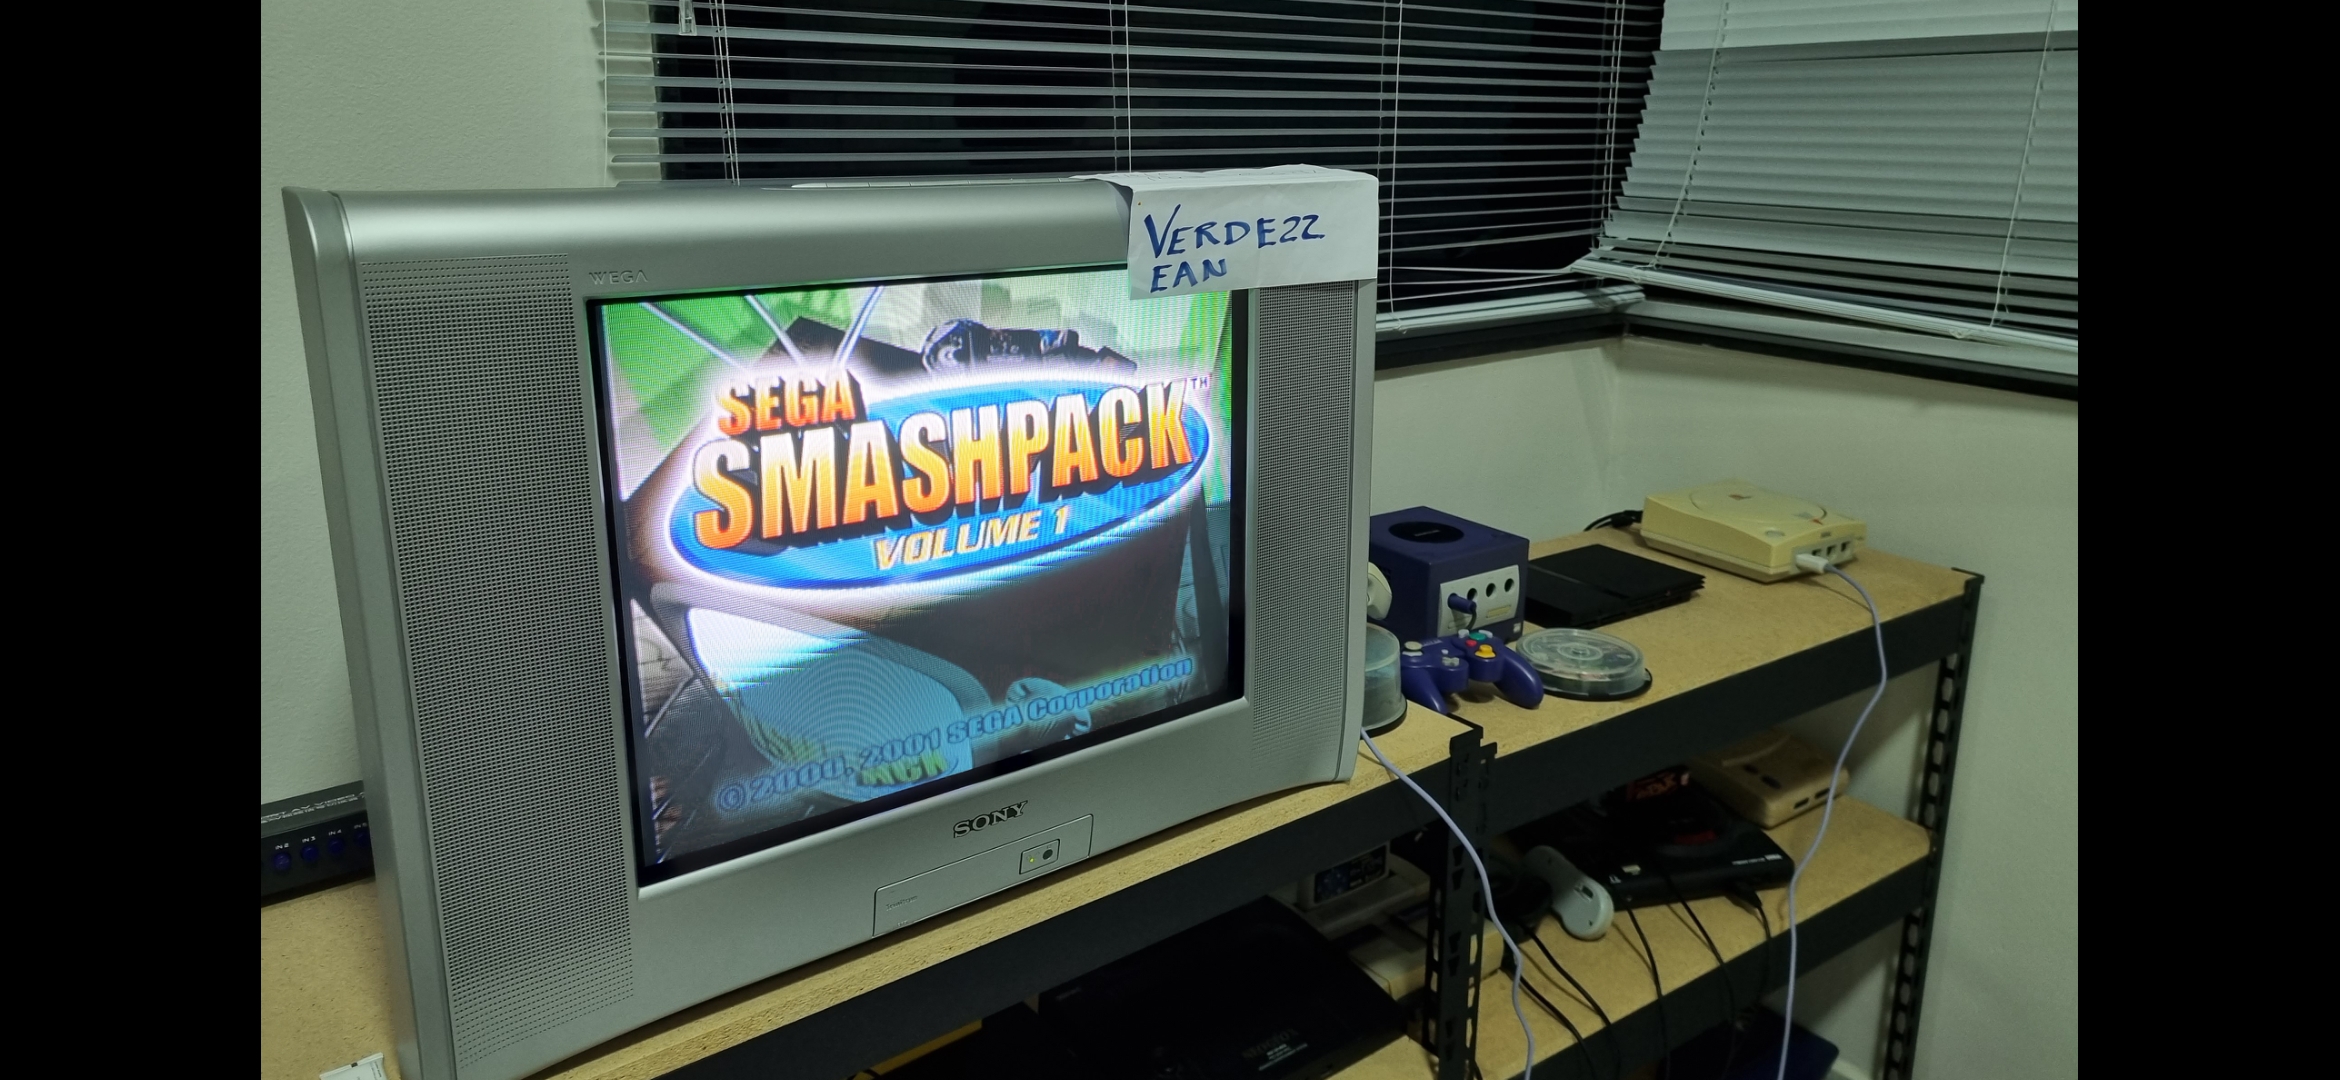 Verde22: Sega Smash Pack: Golden Axe (Dreamcast) 45 points on 2022-08-17 19:02:39